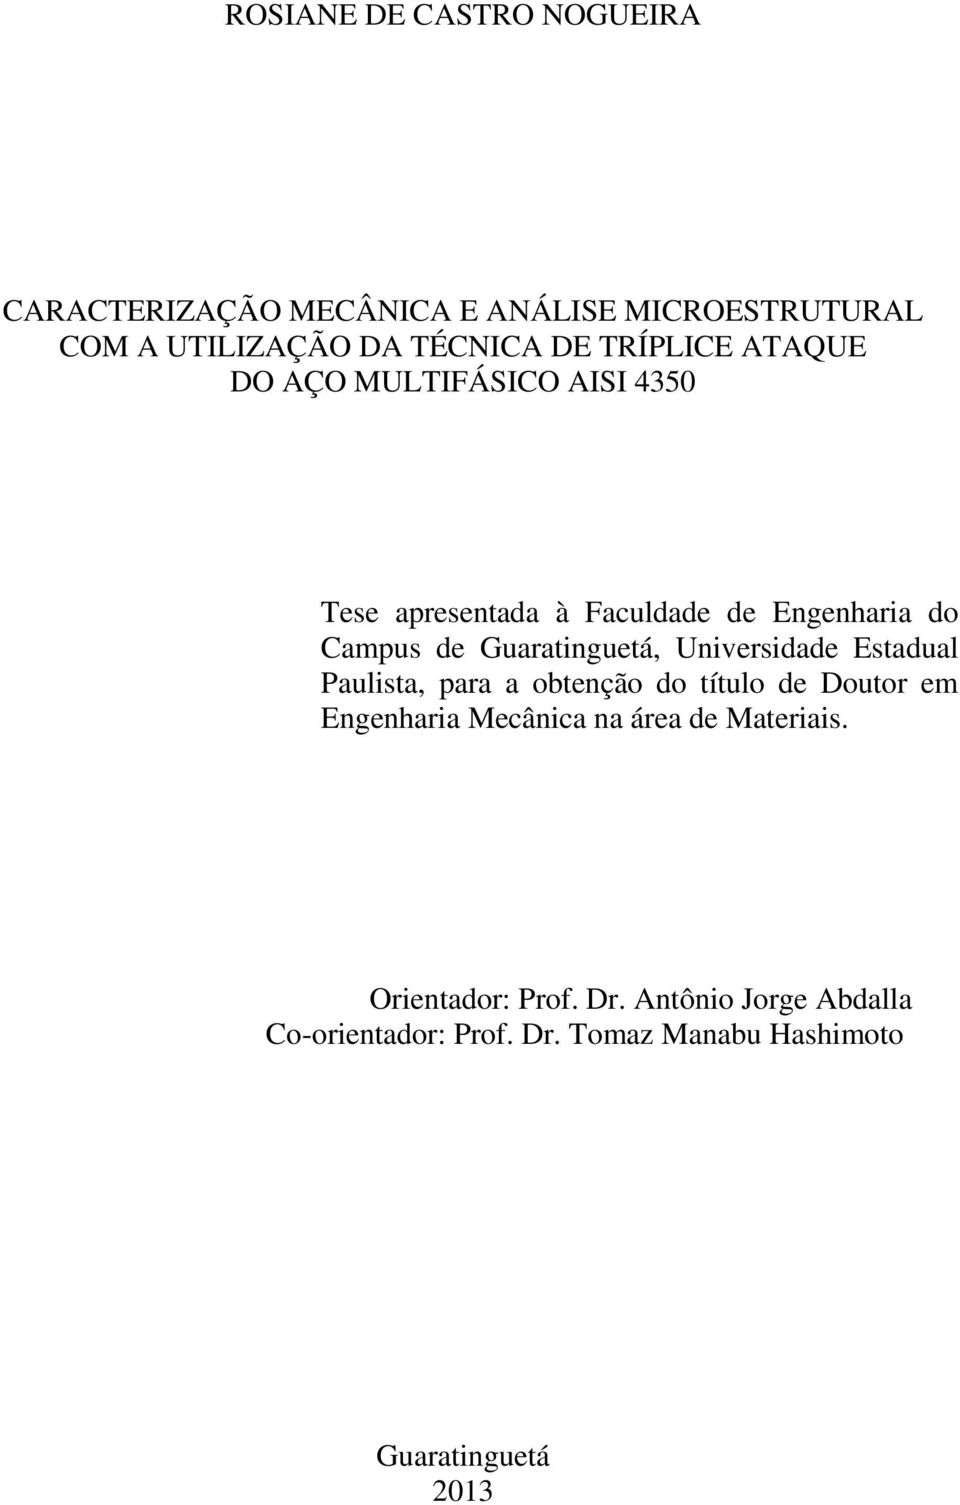 Guaratinguetá, Universidade Estadual Paulista, para a obtenção do título de Doutor em Engenharia Mecânica na